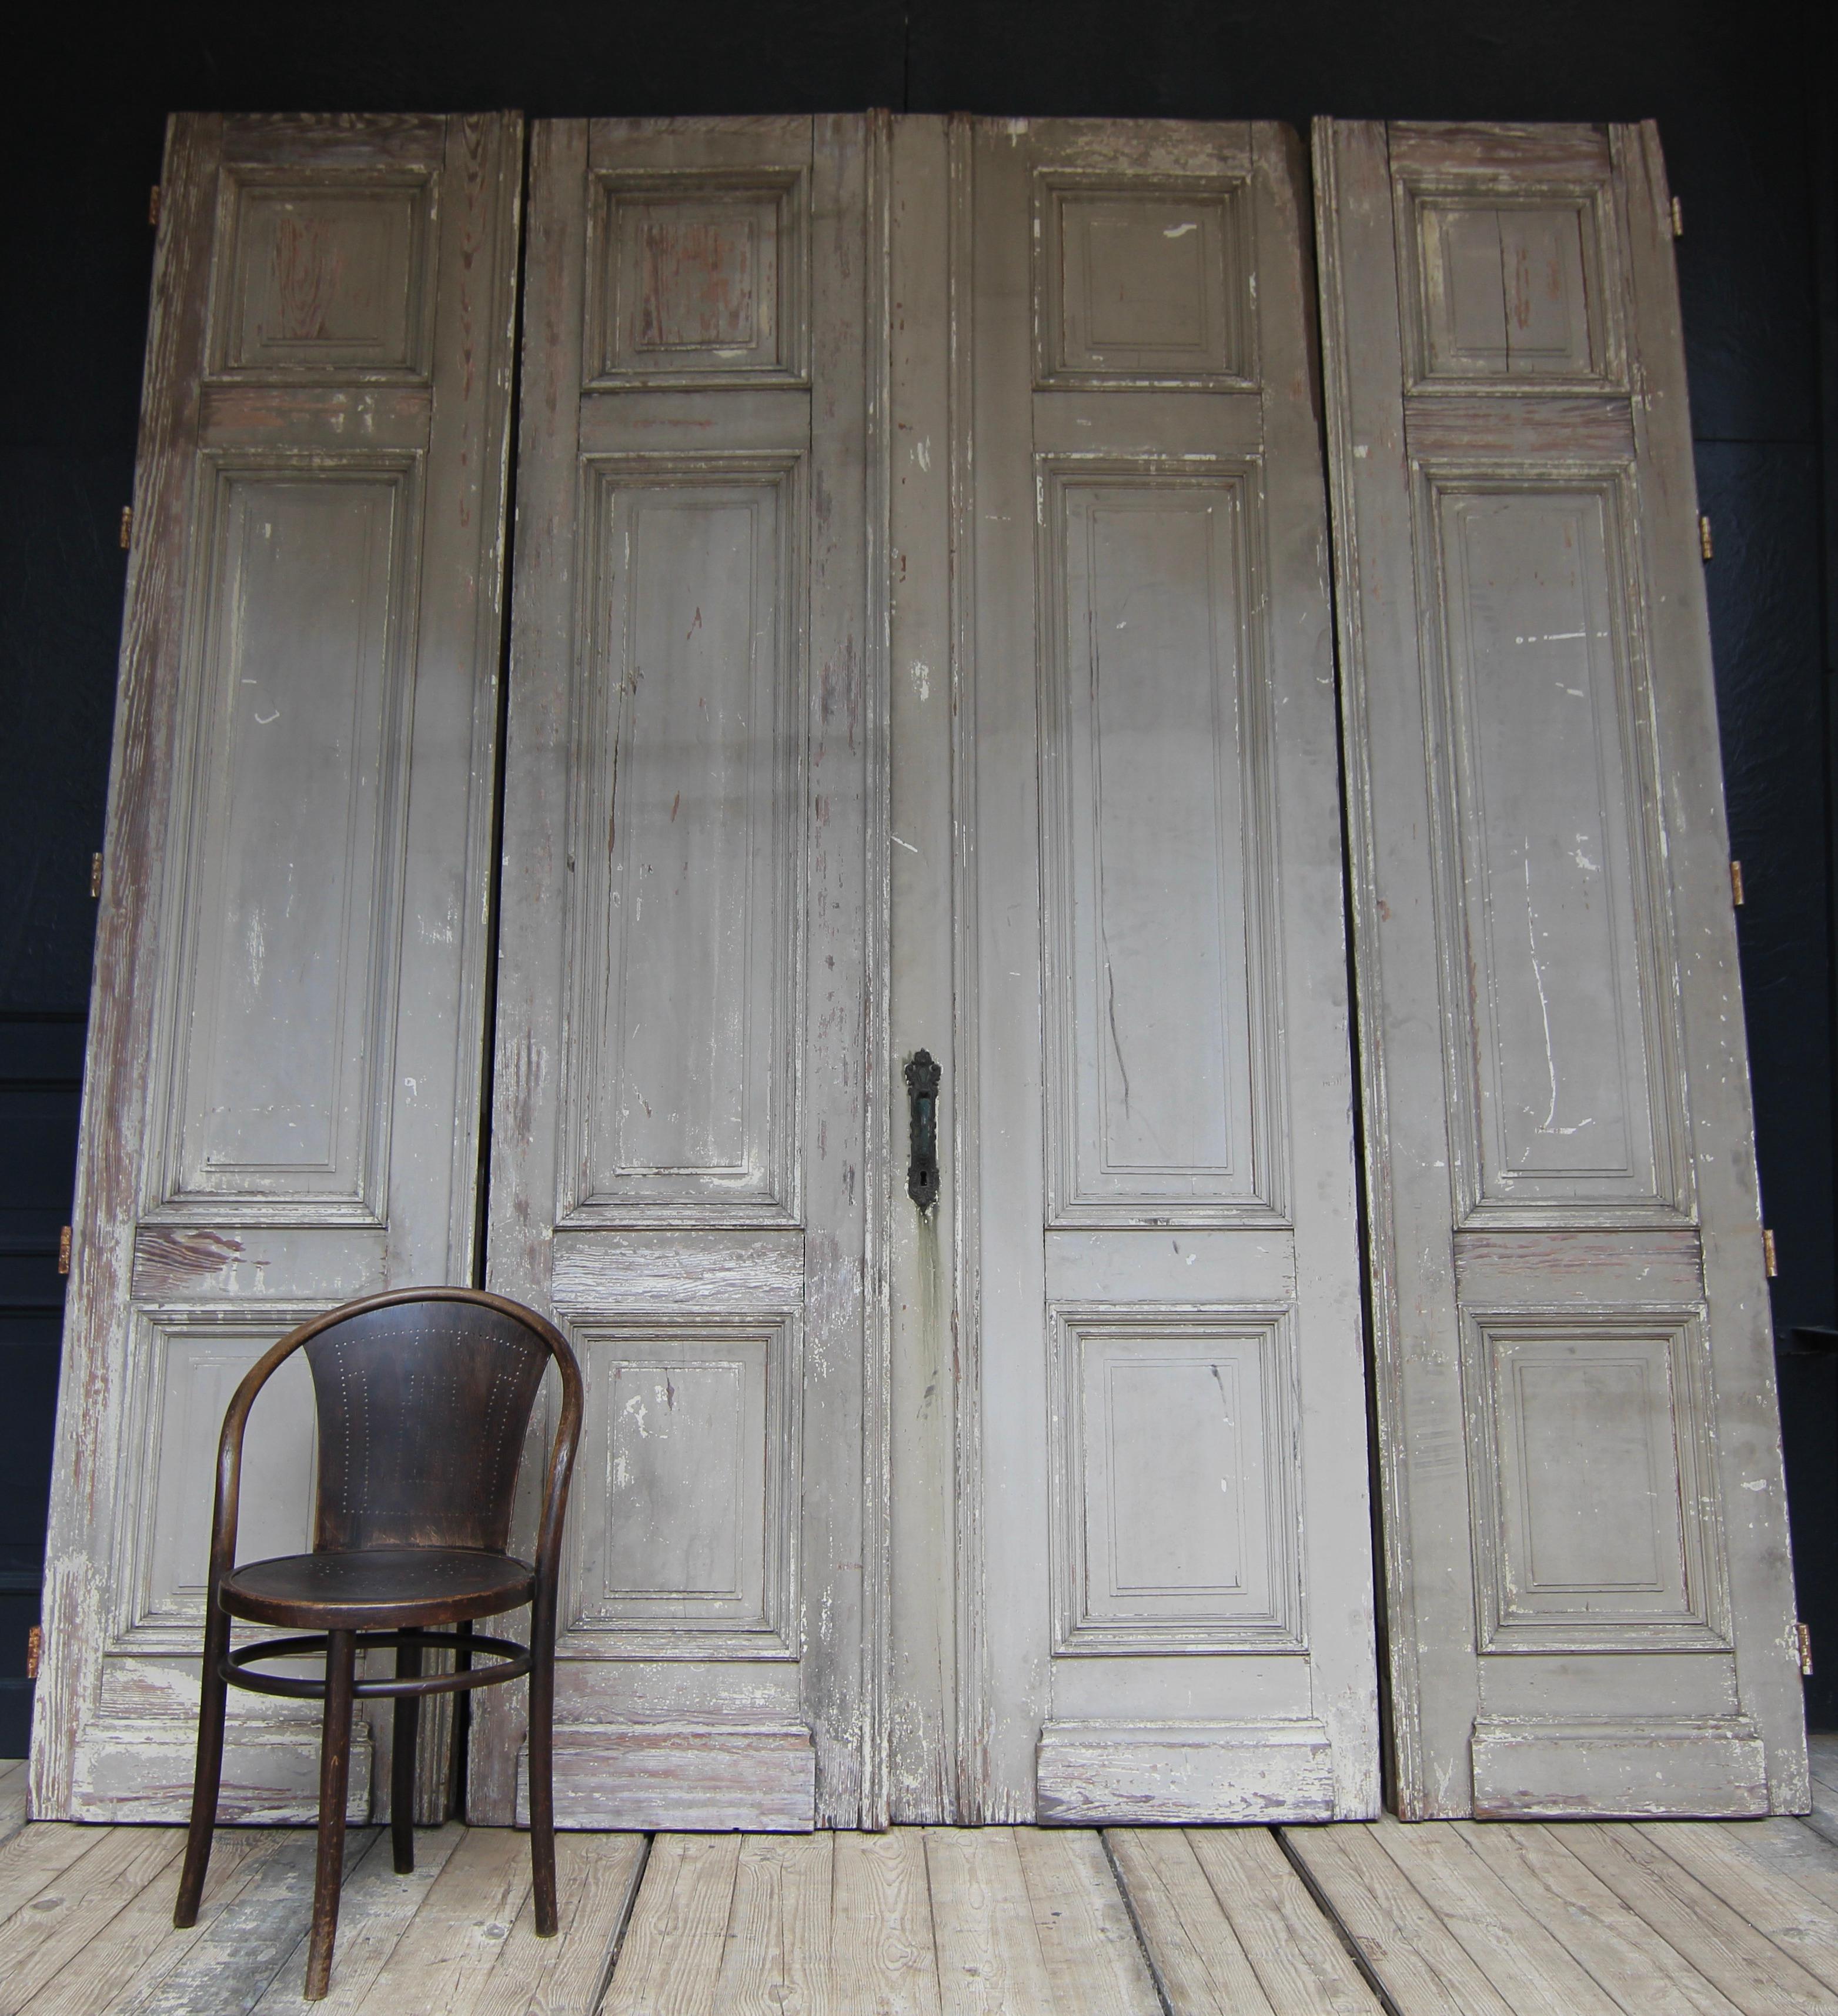 Große Doppeltür mit 2 Seitenteilen, oder Raumteiler, um 1900. Massives Kiefernholz mit der ursprünglichen Farbe. Unrestaurierter Zustand.

Set bestehend aus vier Teilen in Rahmenbauweise mit je 3 Kassettenpaneelen (Doppeltür + 2